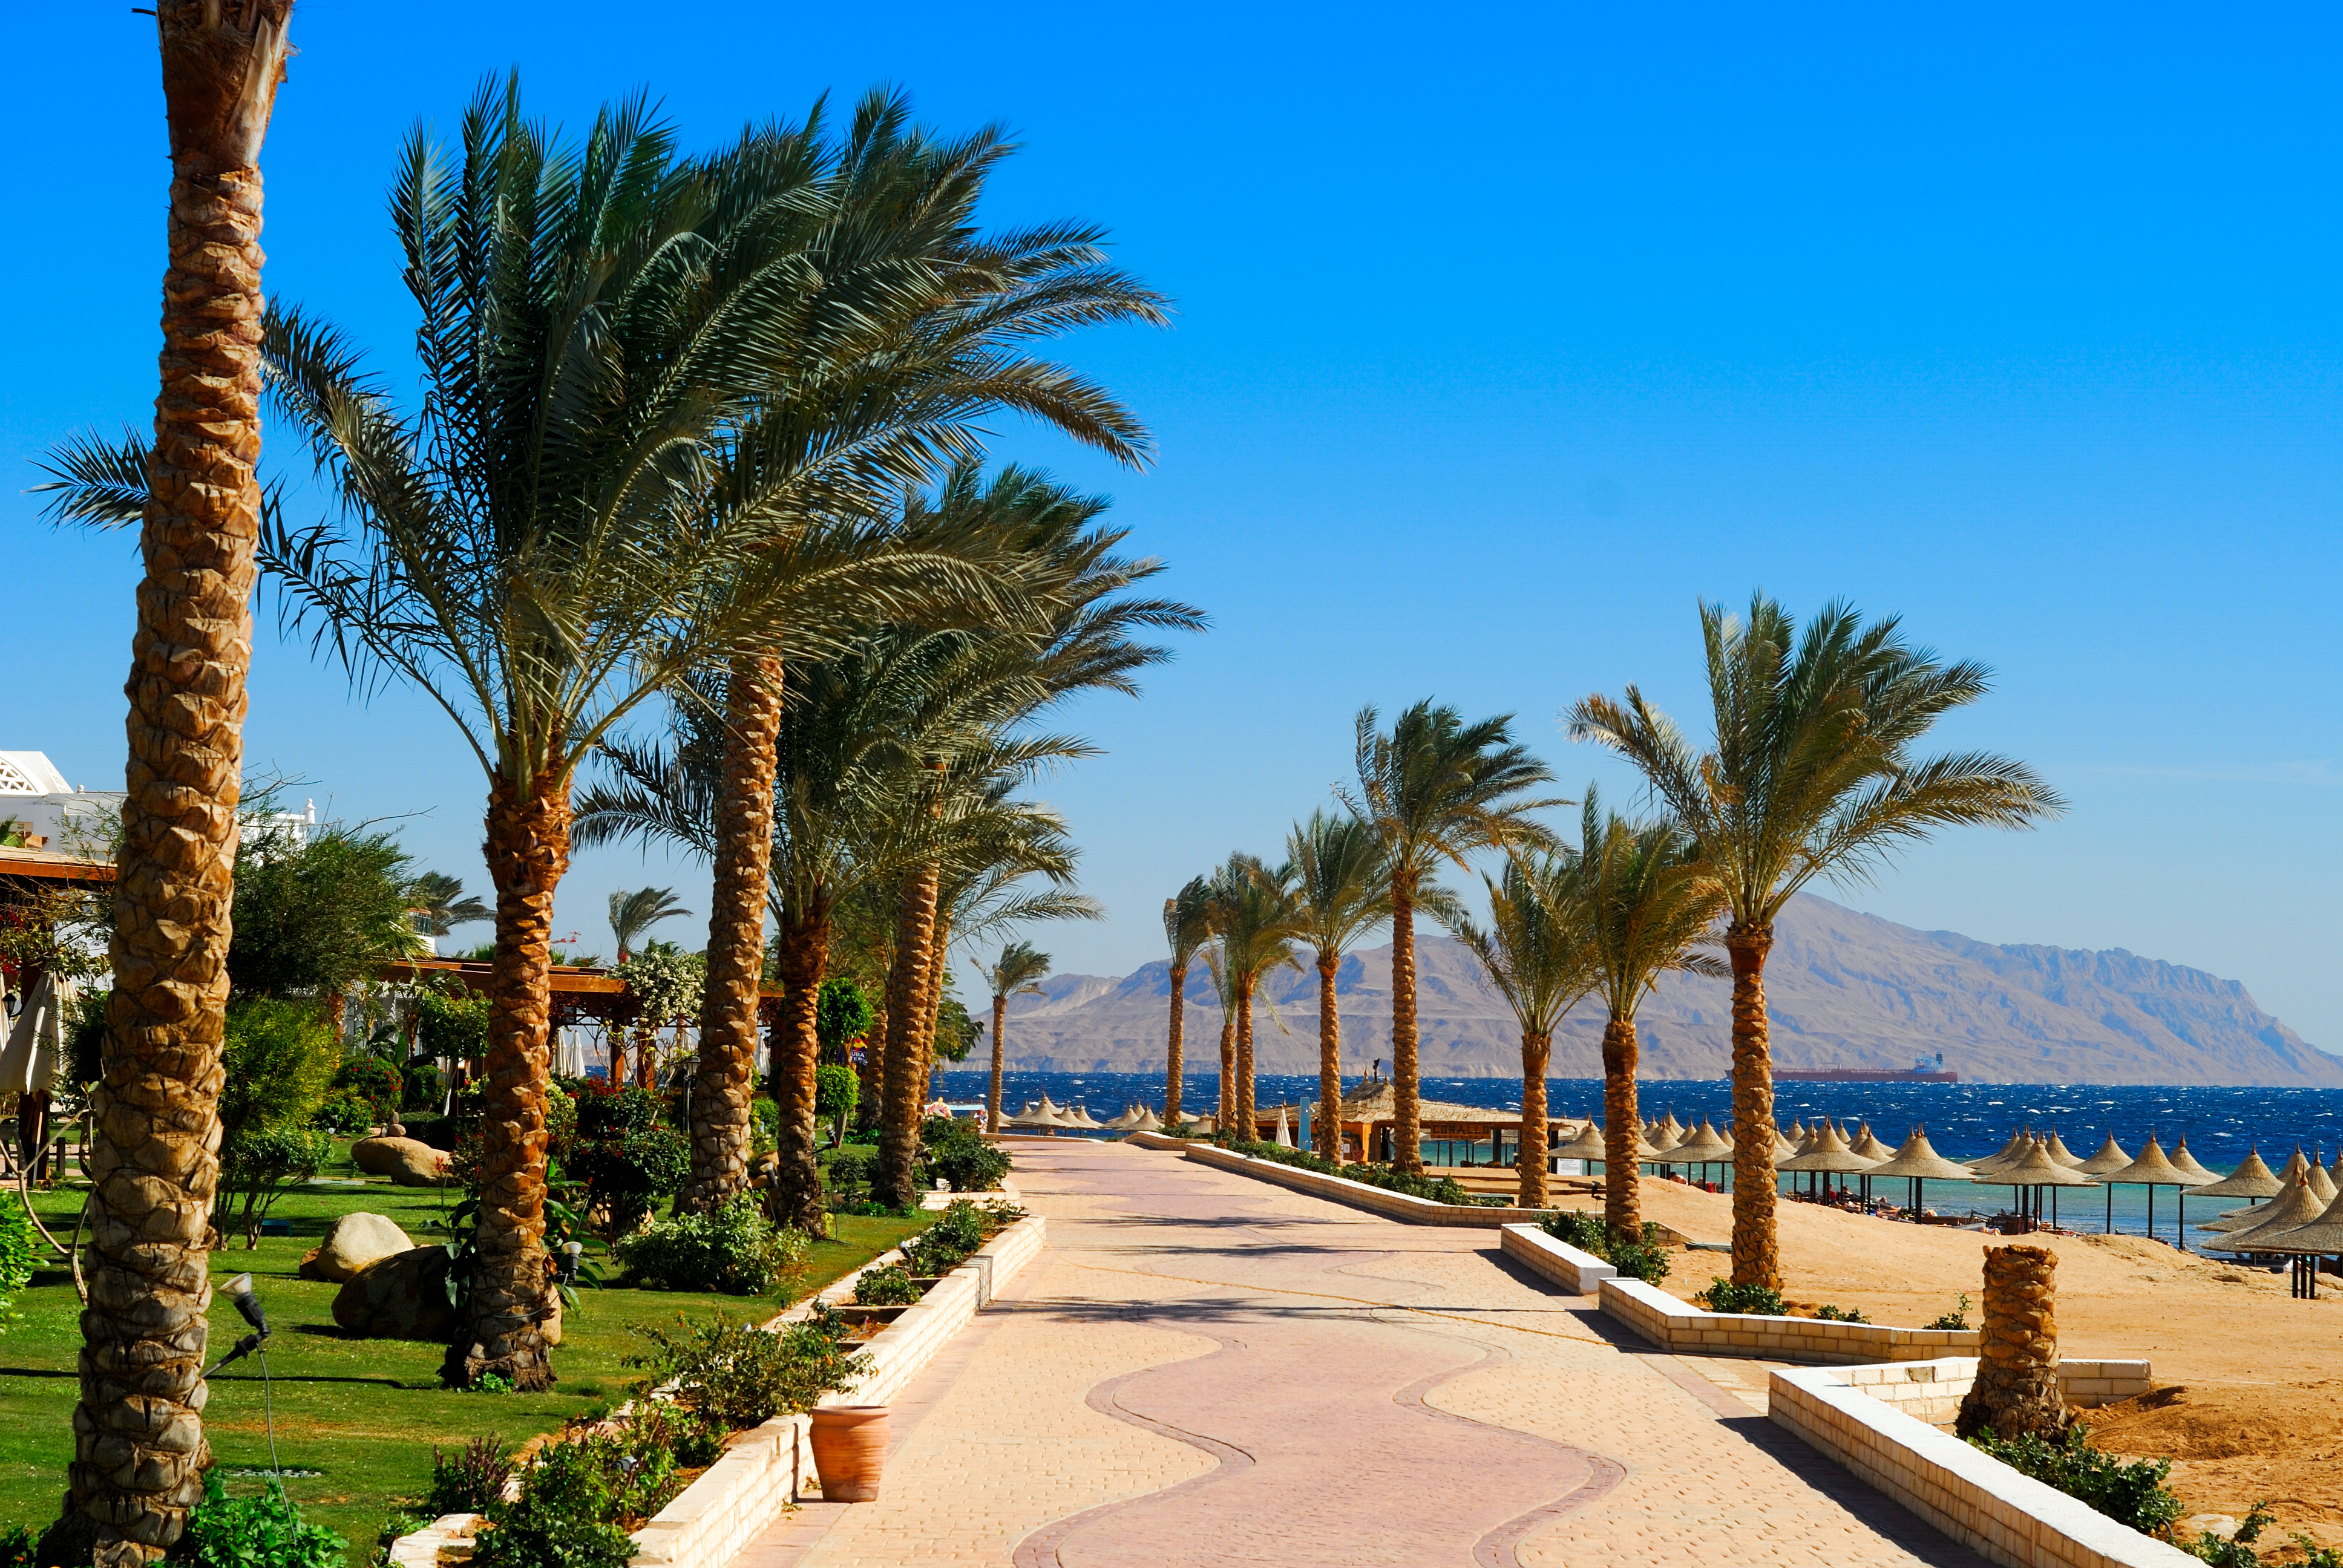 Promenade am Strand in Sharm El Sheikh